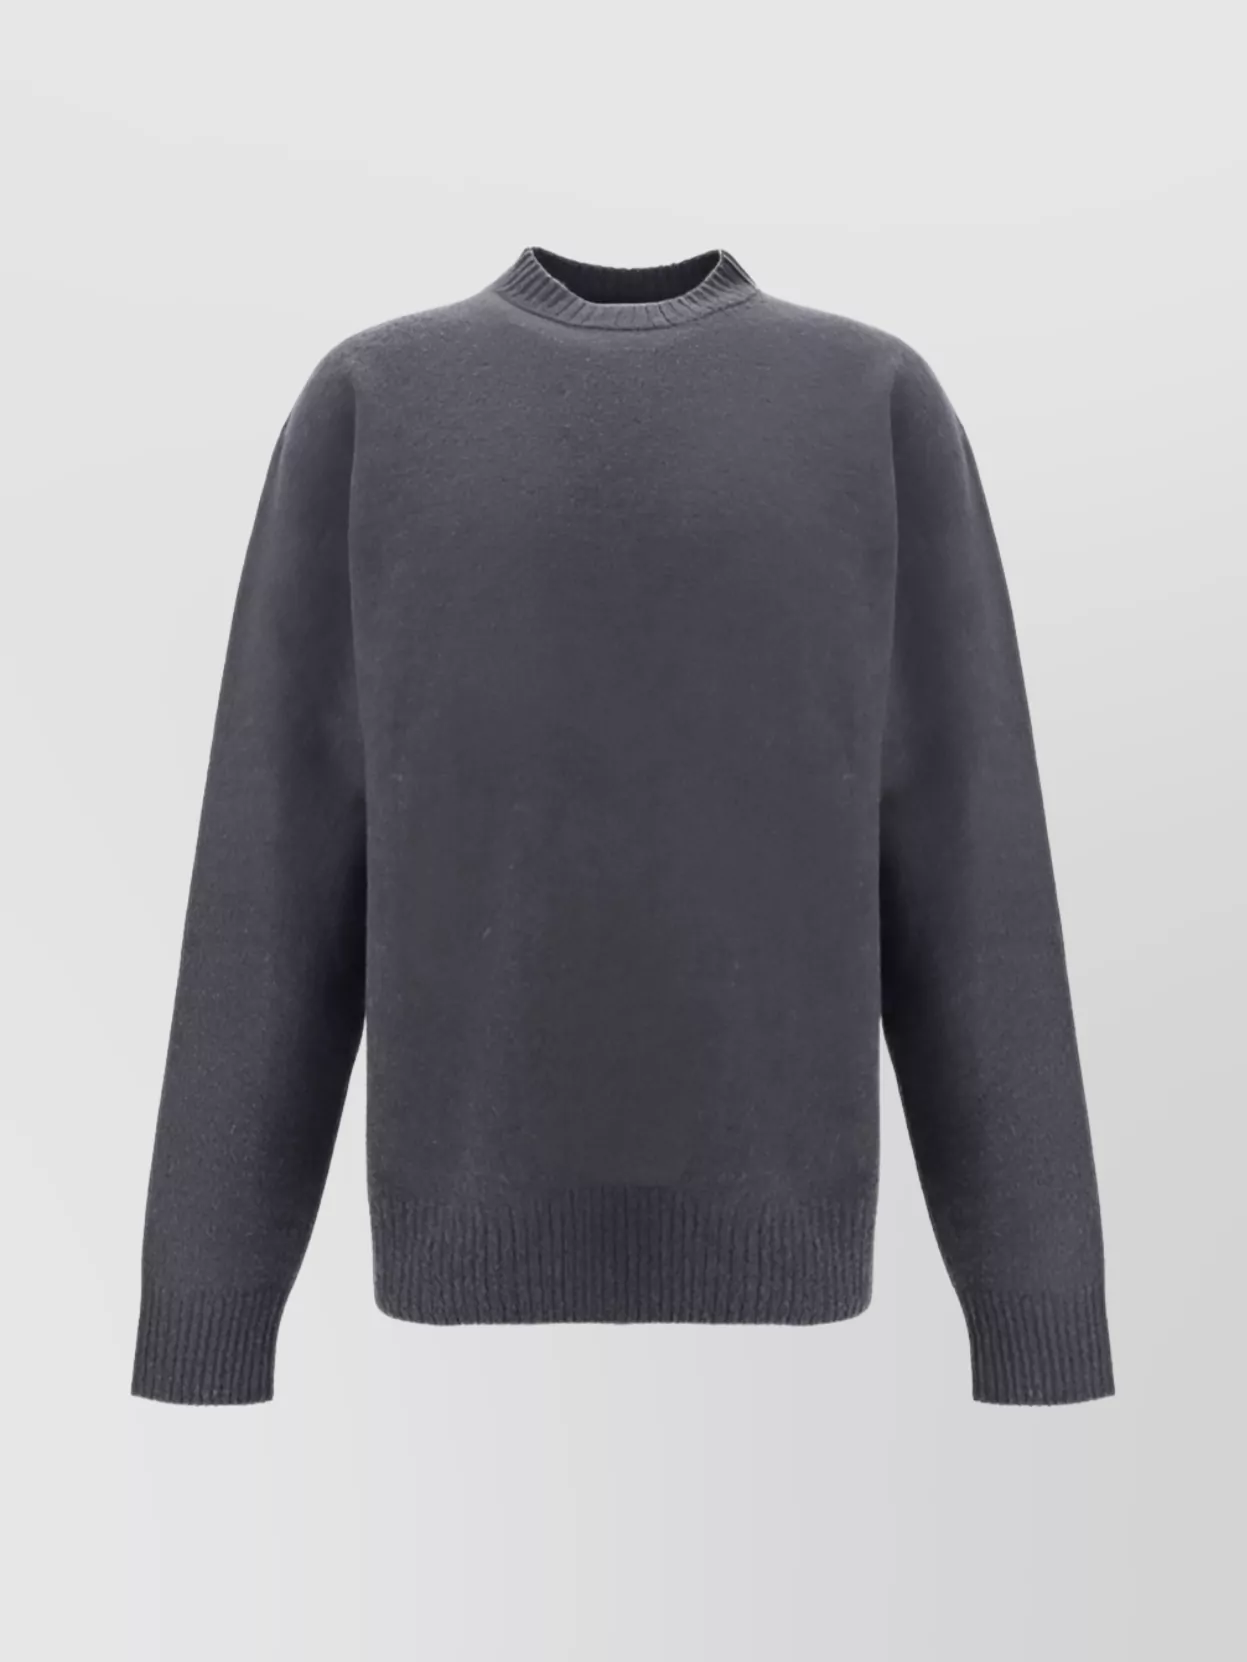 Jil Sander Monochrome Wool Crew Neck Sweater In Gray